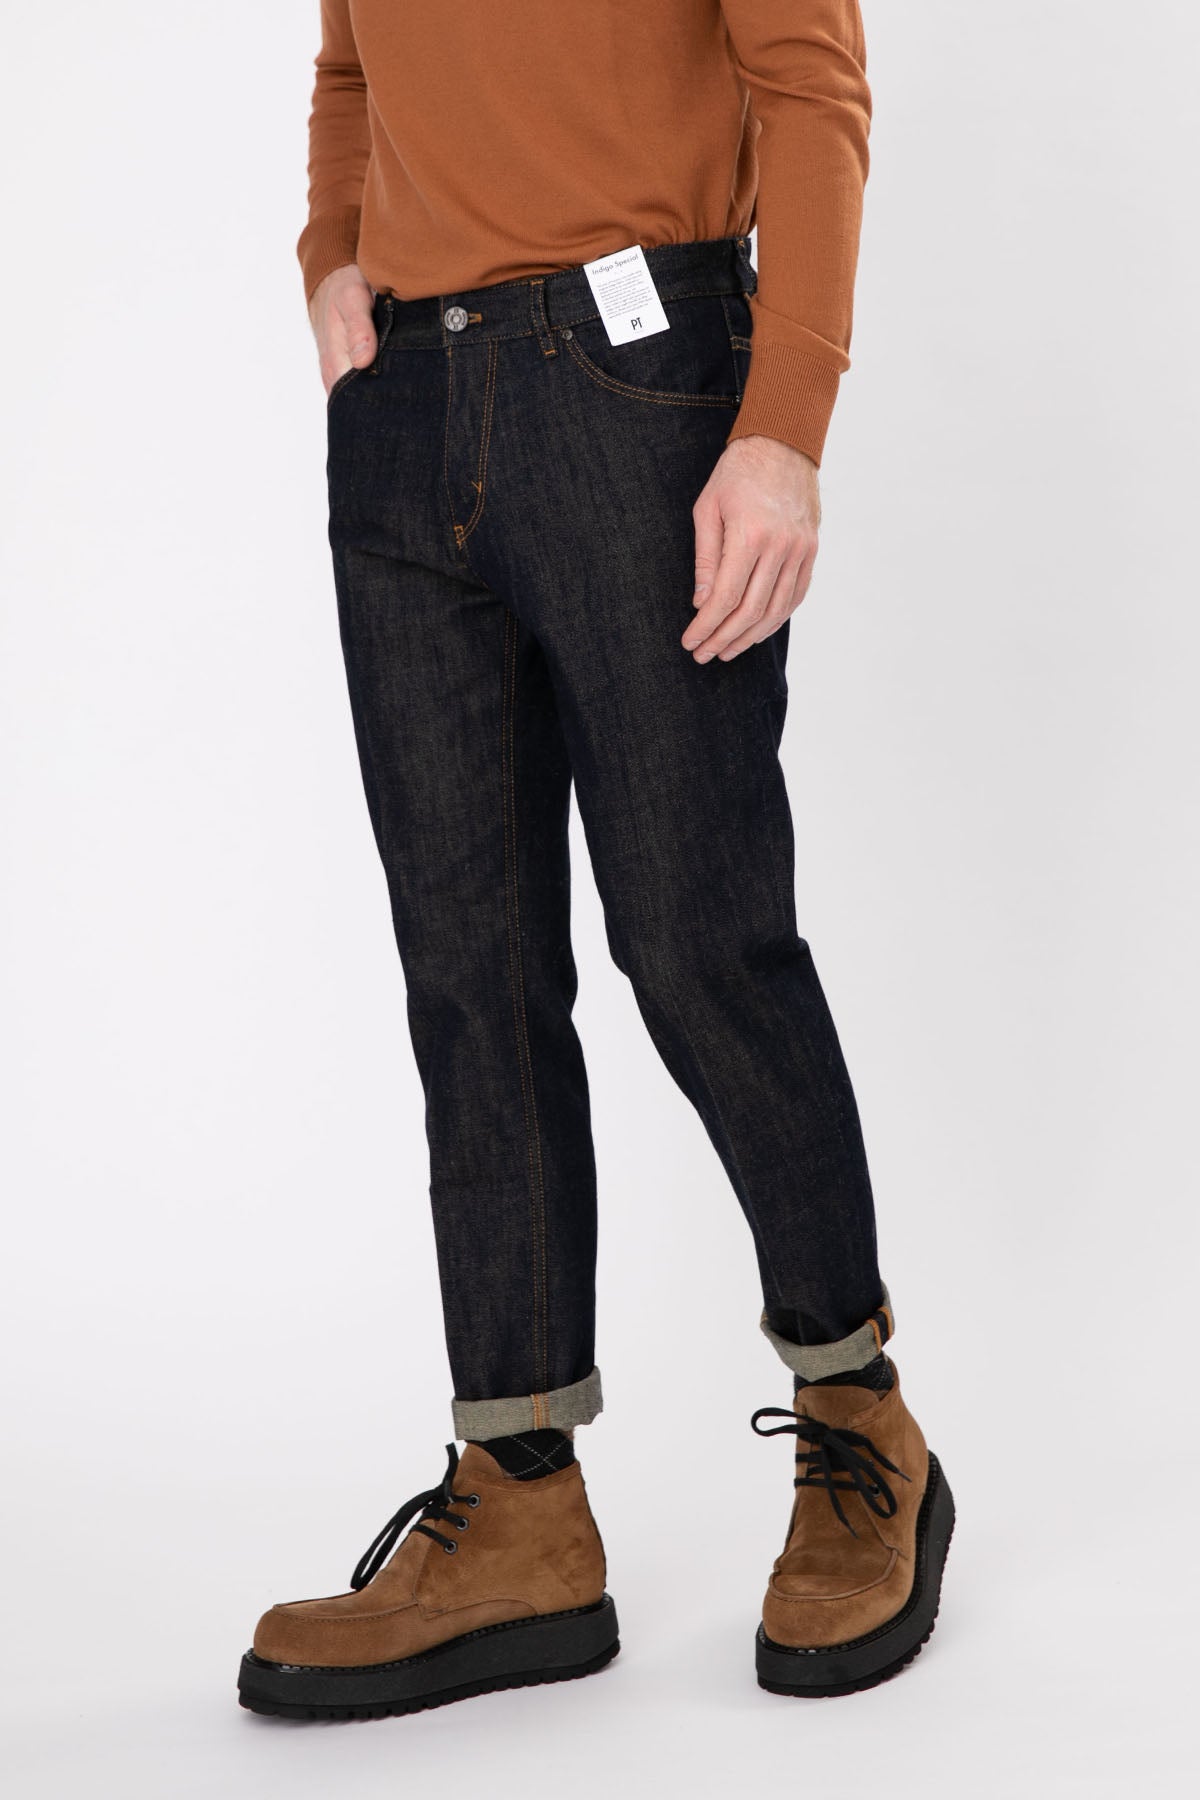 Pantaloni Torino Reggae Fit Duble Paça Jeans-Libas Trendy Fashion Store